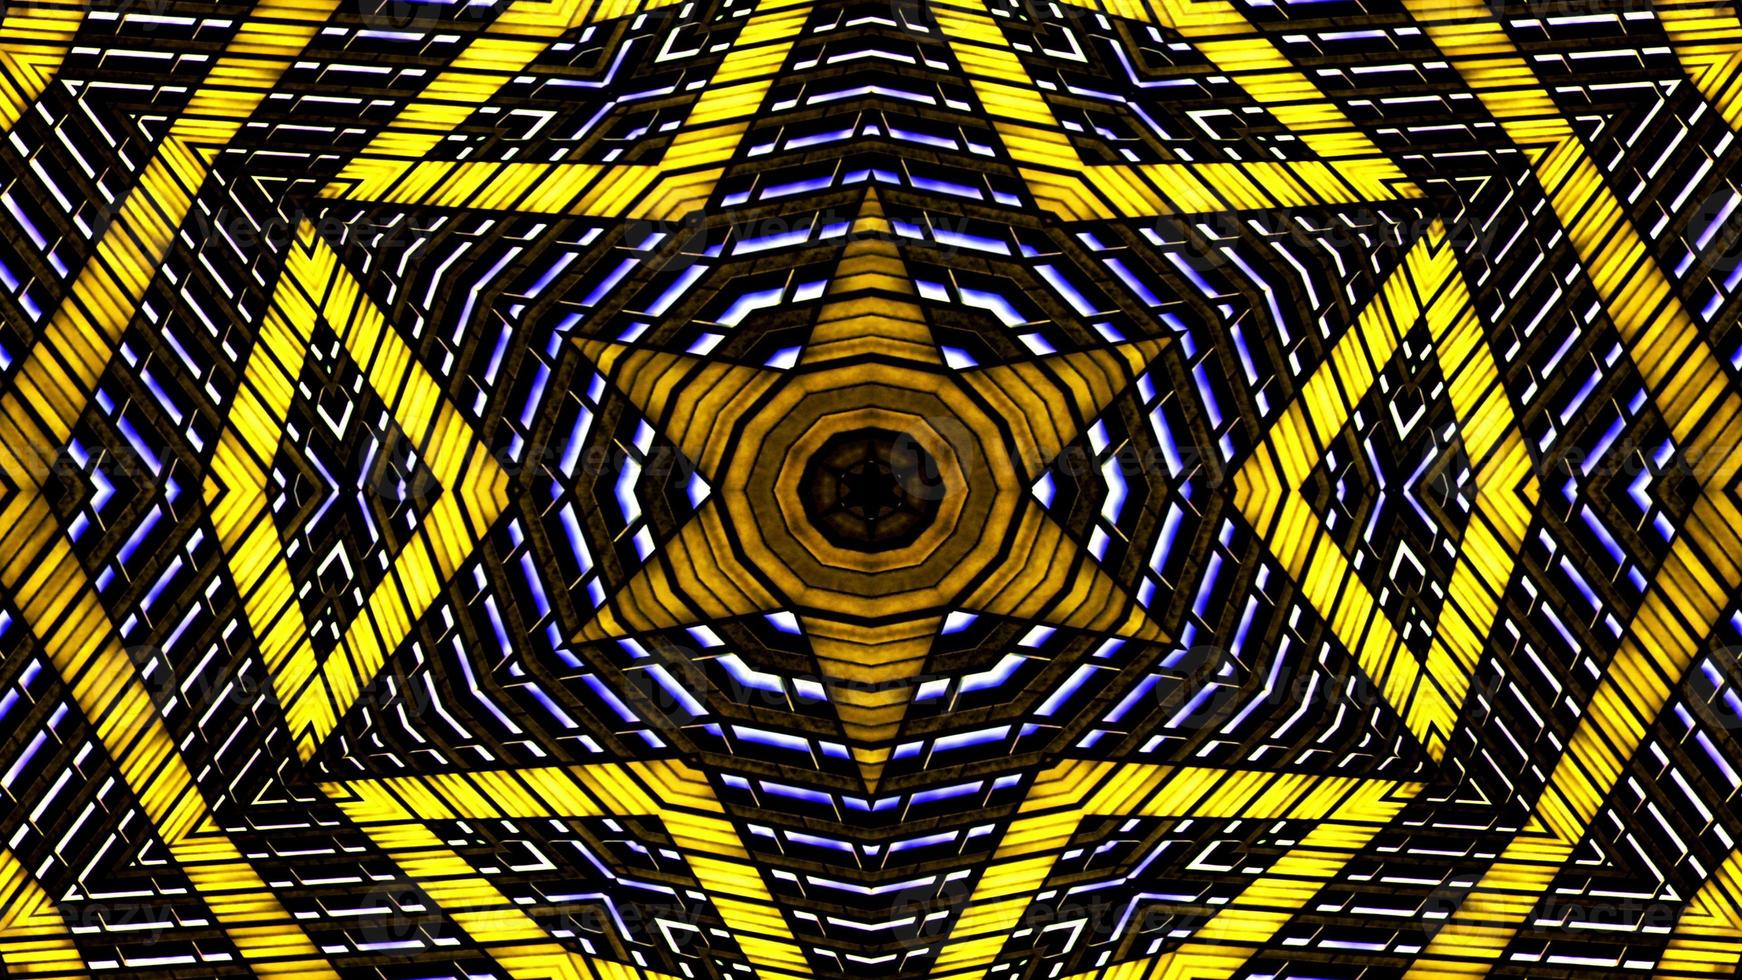 Kaléidoscope symétrique hypnotique coloré photo